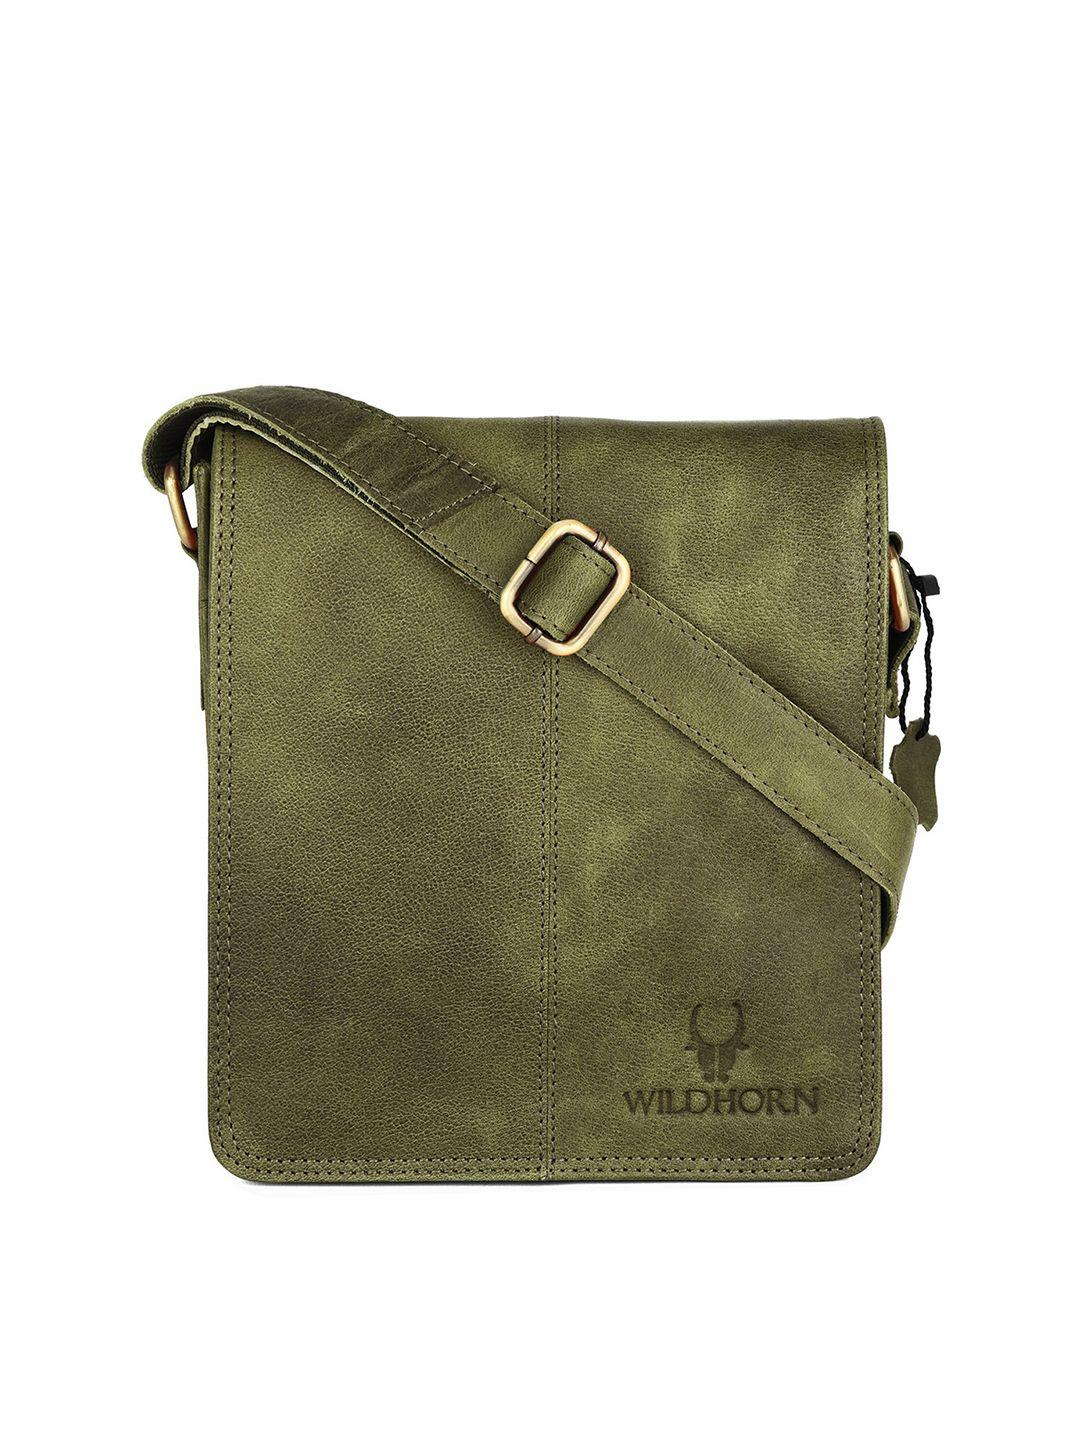 wildhorn men green messenger bag